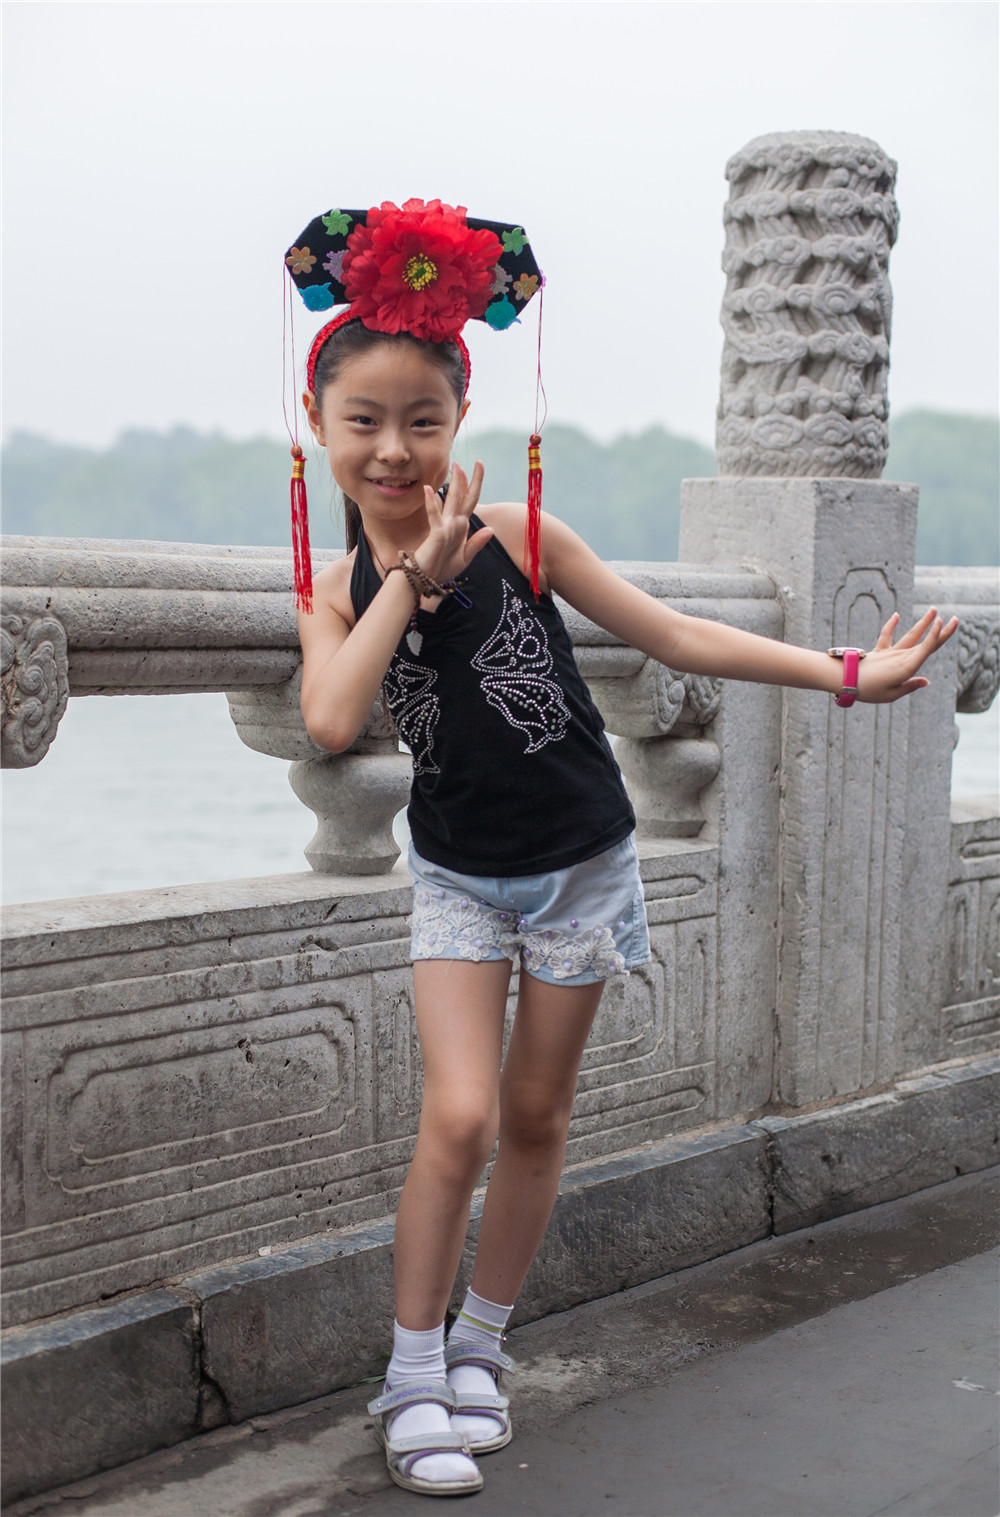 11 июля 2010г. Пекин, парк Бэйхай.Девочка в национальном головном уборе очень красиво позировала на фоне древнего каменного моста в праке Бэйхай.